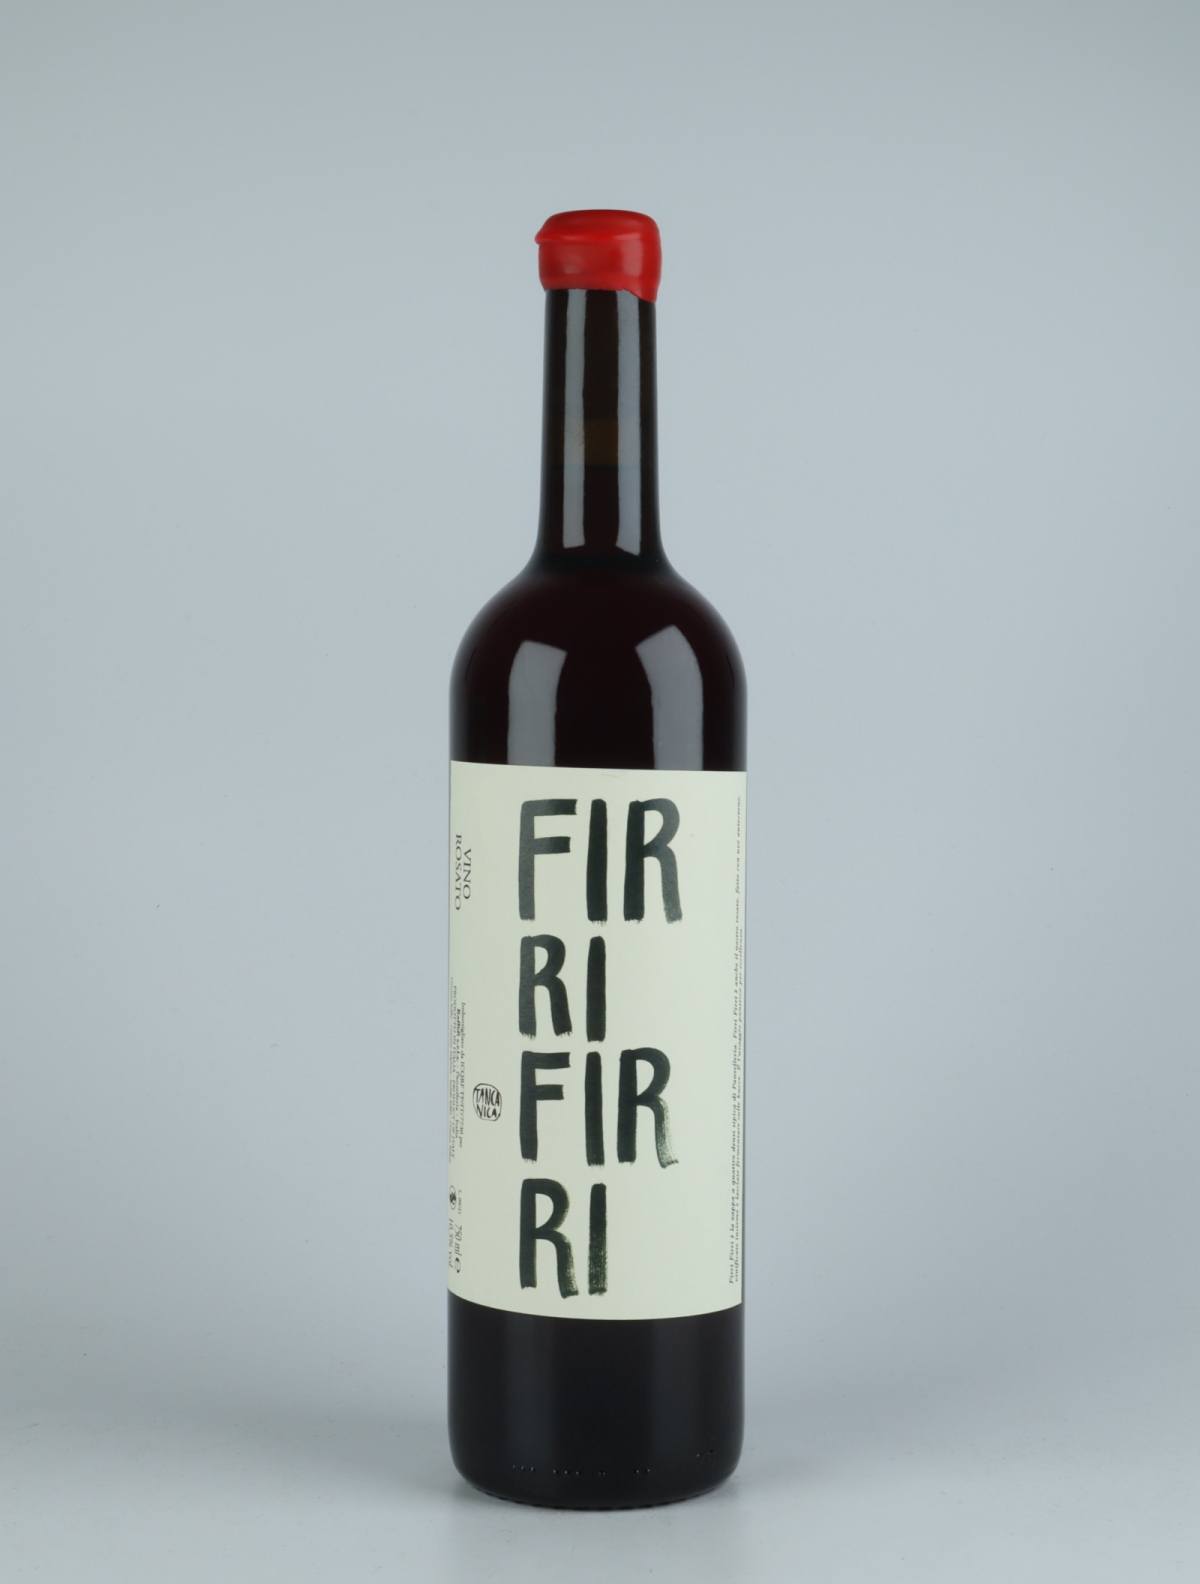 A bottle 2020 Firri Firri Rosé from Tanca Nica, Sicily in Italy